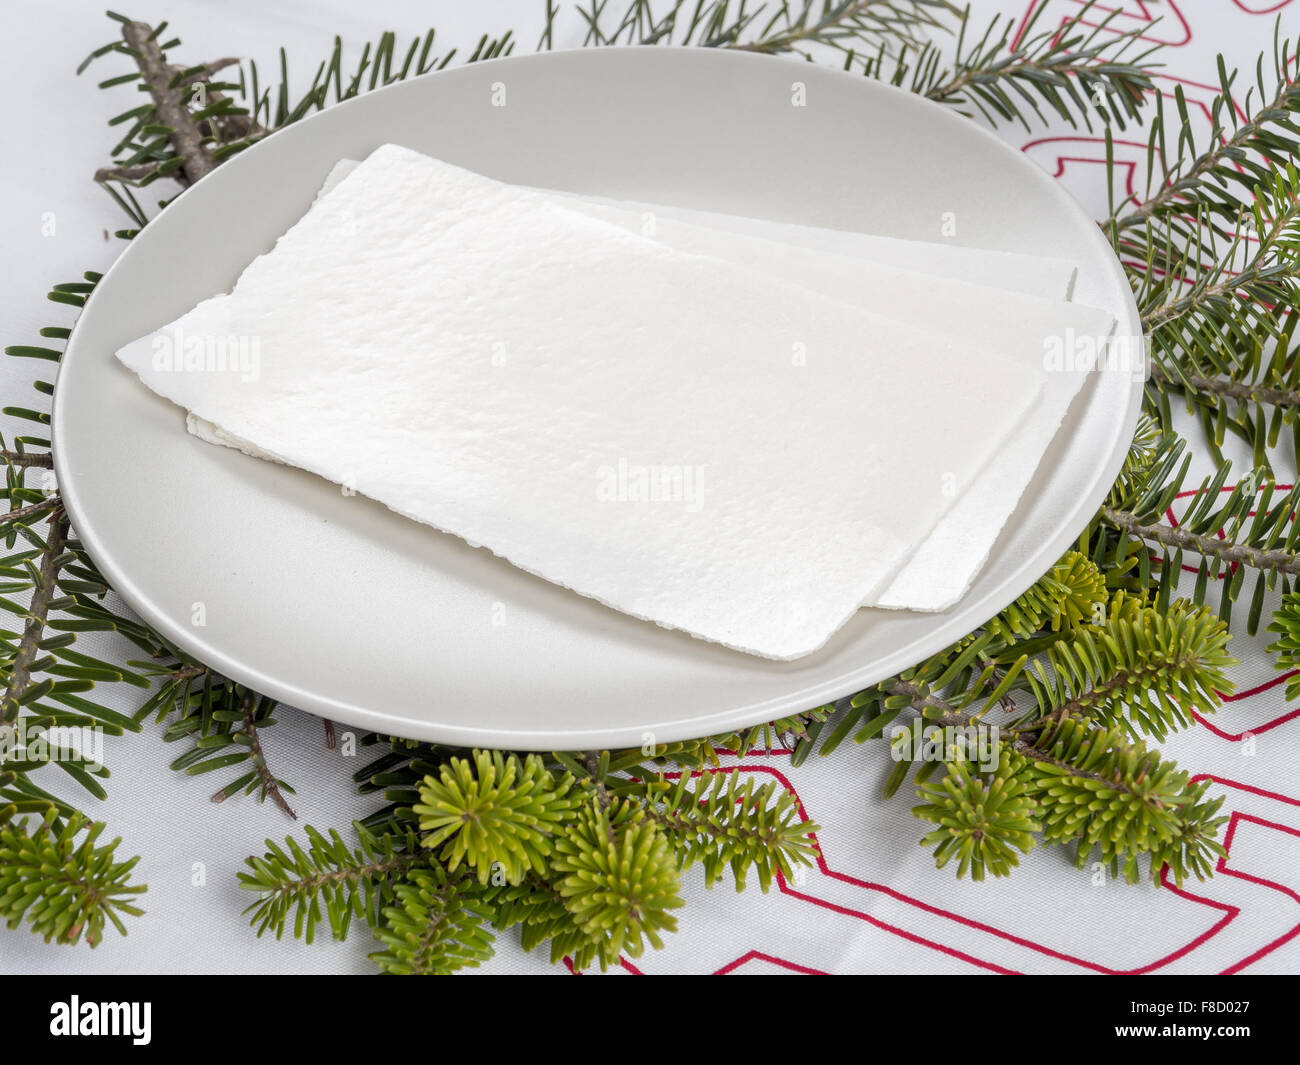 La veille de Noël traditionnelle galette blanche sur une plaque avec des pousses du sapin Banque D'Images